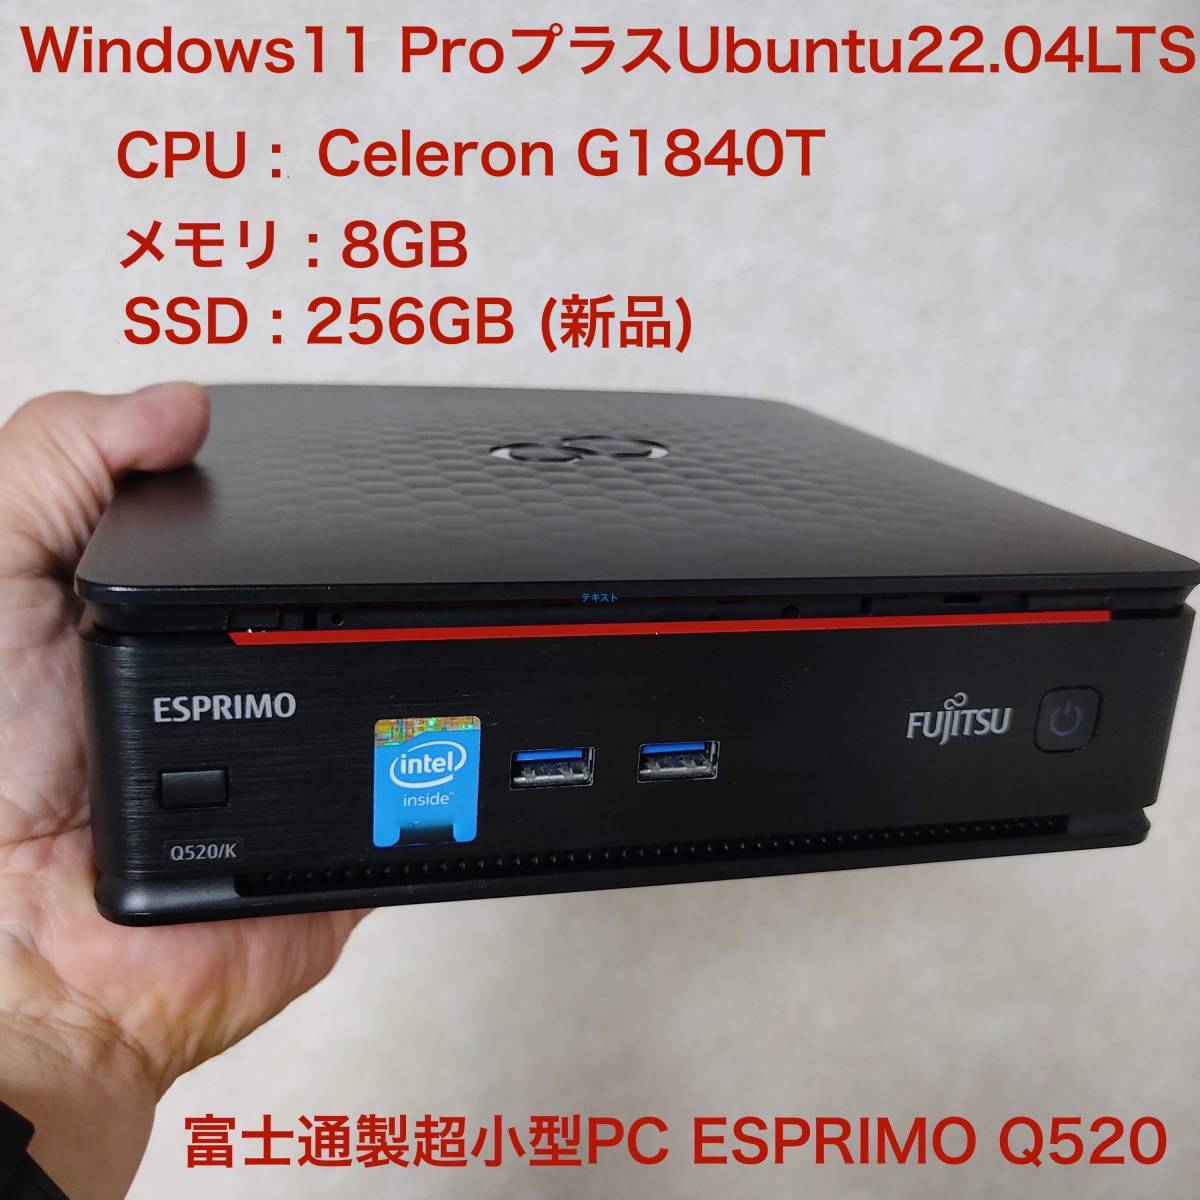 超大特価 12B 富士通製ミニPC Q520 ESPRIMO パソコン単体 - store